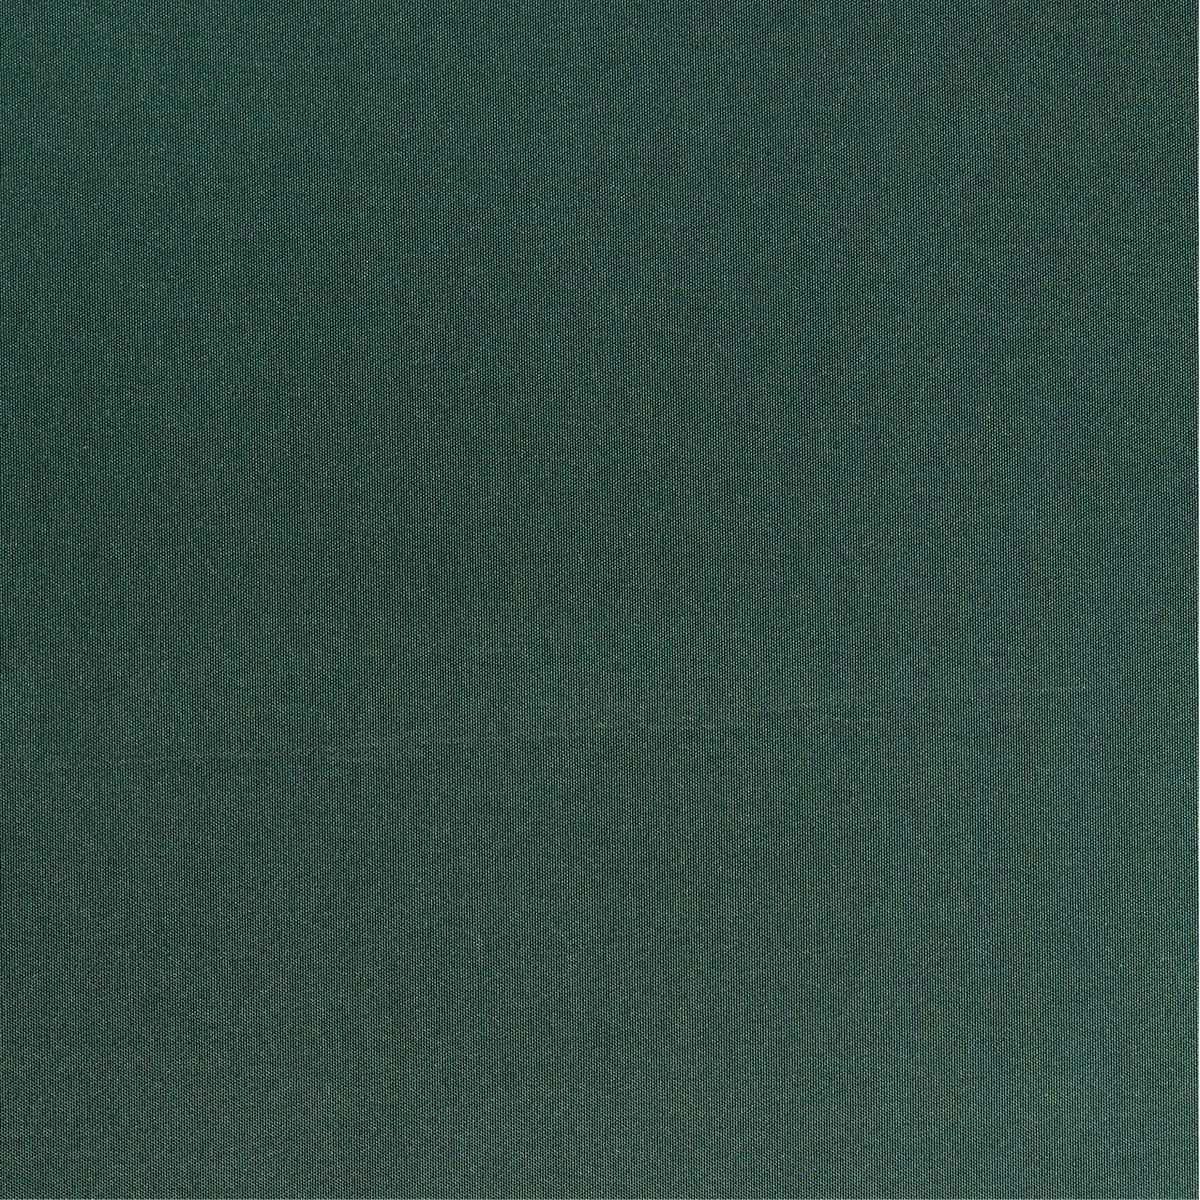 Outdoor-Stoff dunkelgrün uni in 1,6m Breite (METERWARE) Markisenstoff aus 100% Polyester